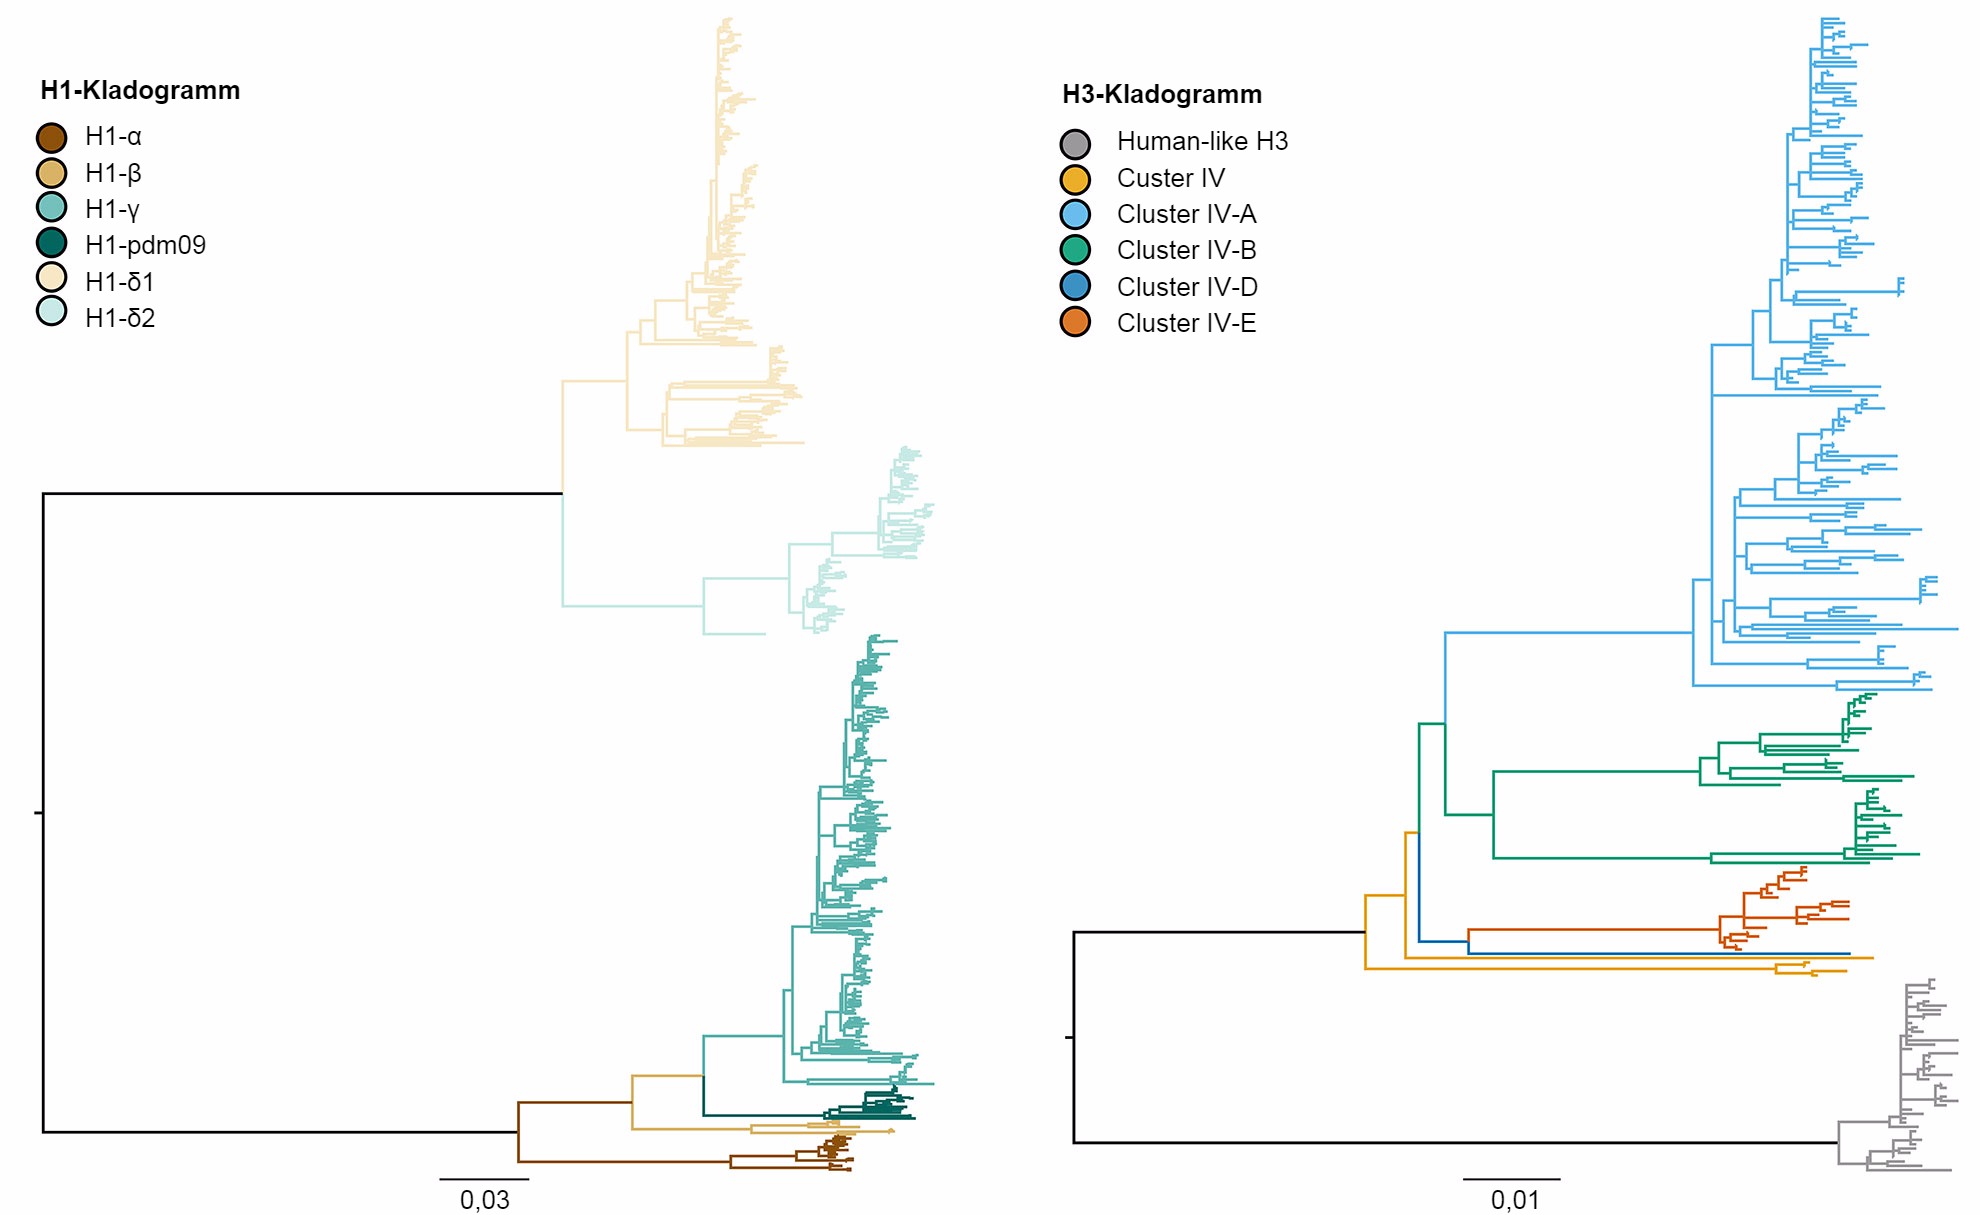 Kladogramm, das die genetischen Beziehungen zwischen den Gensequenzen des Hämagglutinins des H1- und des H3-Influenza-A-Virus beim Schwein von 2015 mithilfe der Maximum-Likelihood-Methode beschreibt.